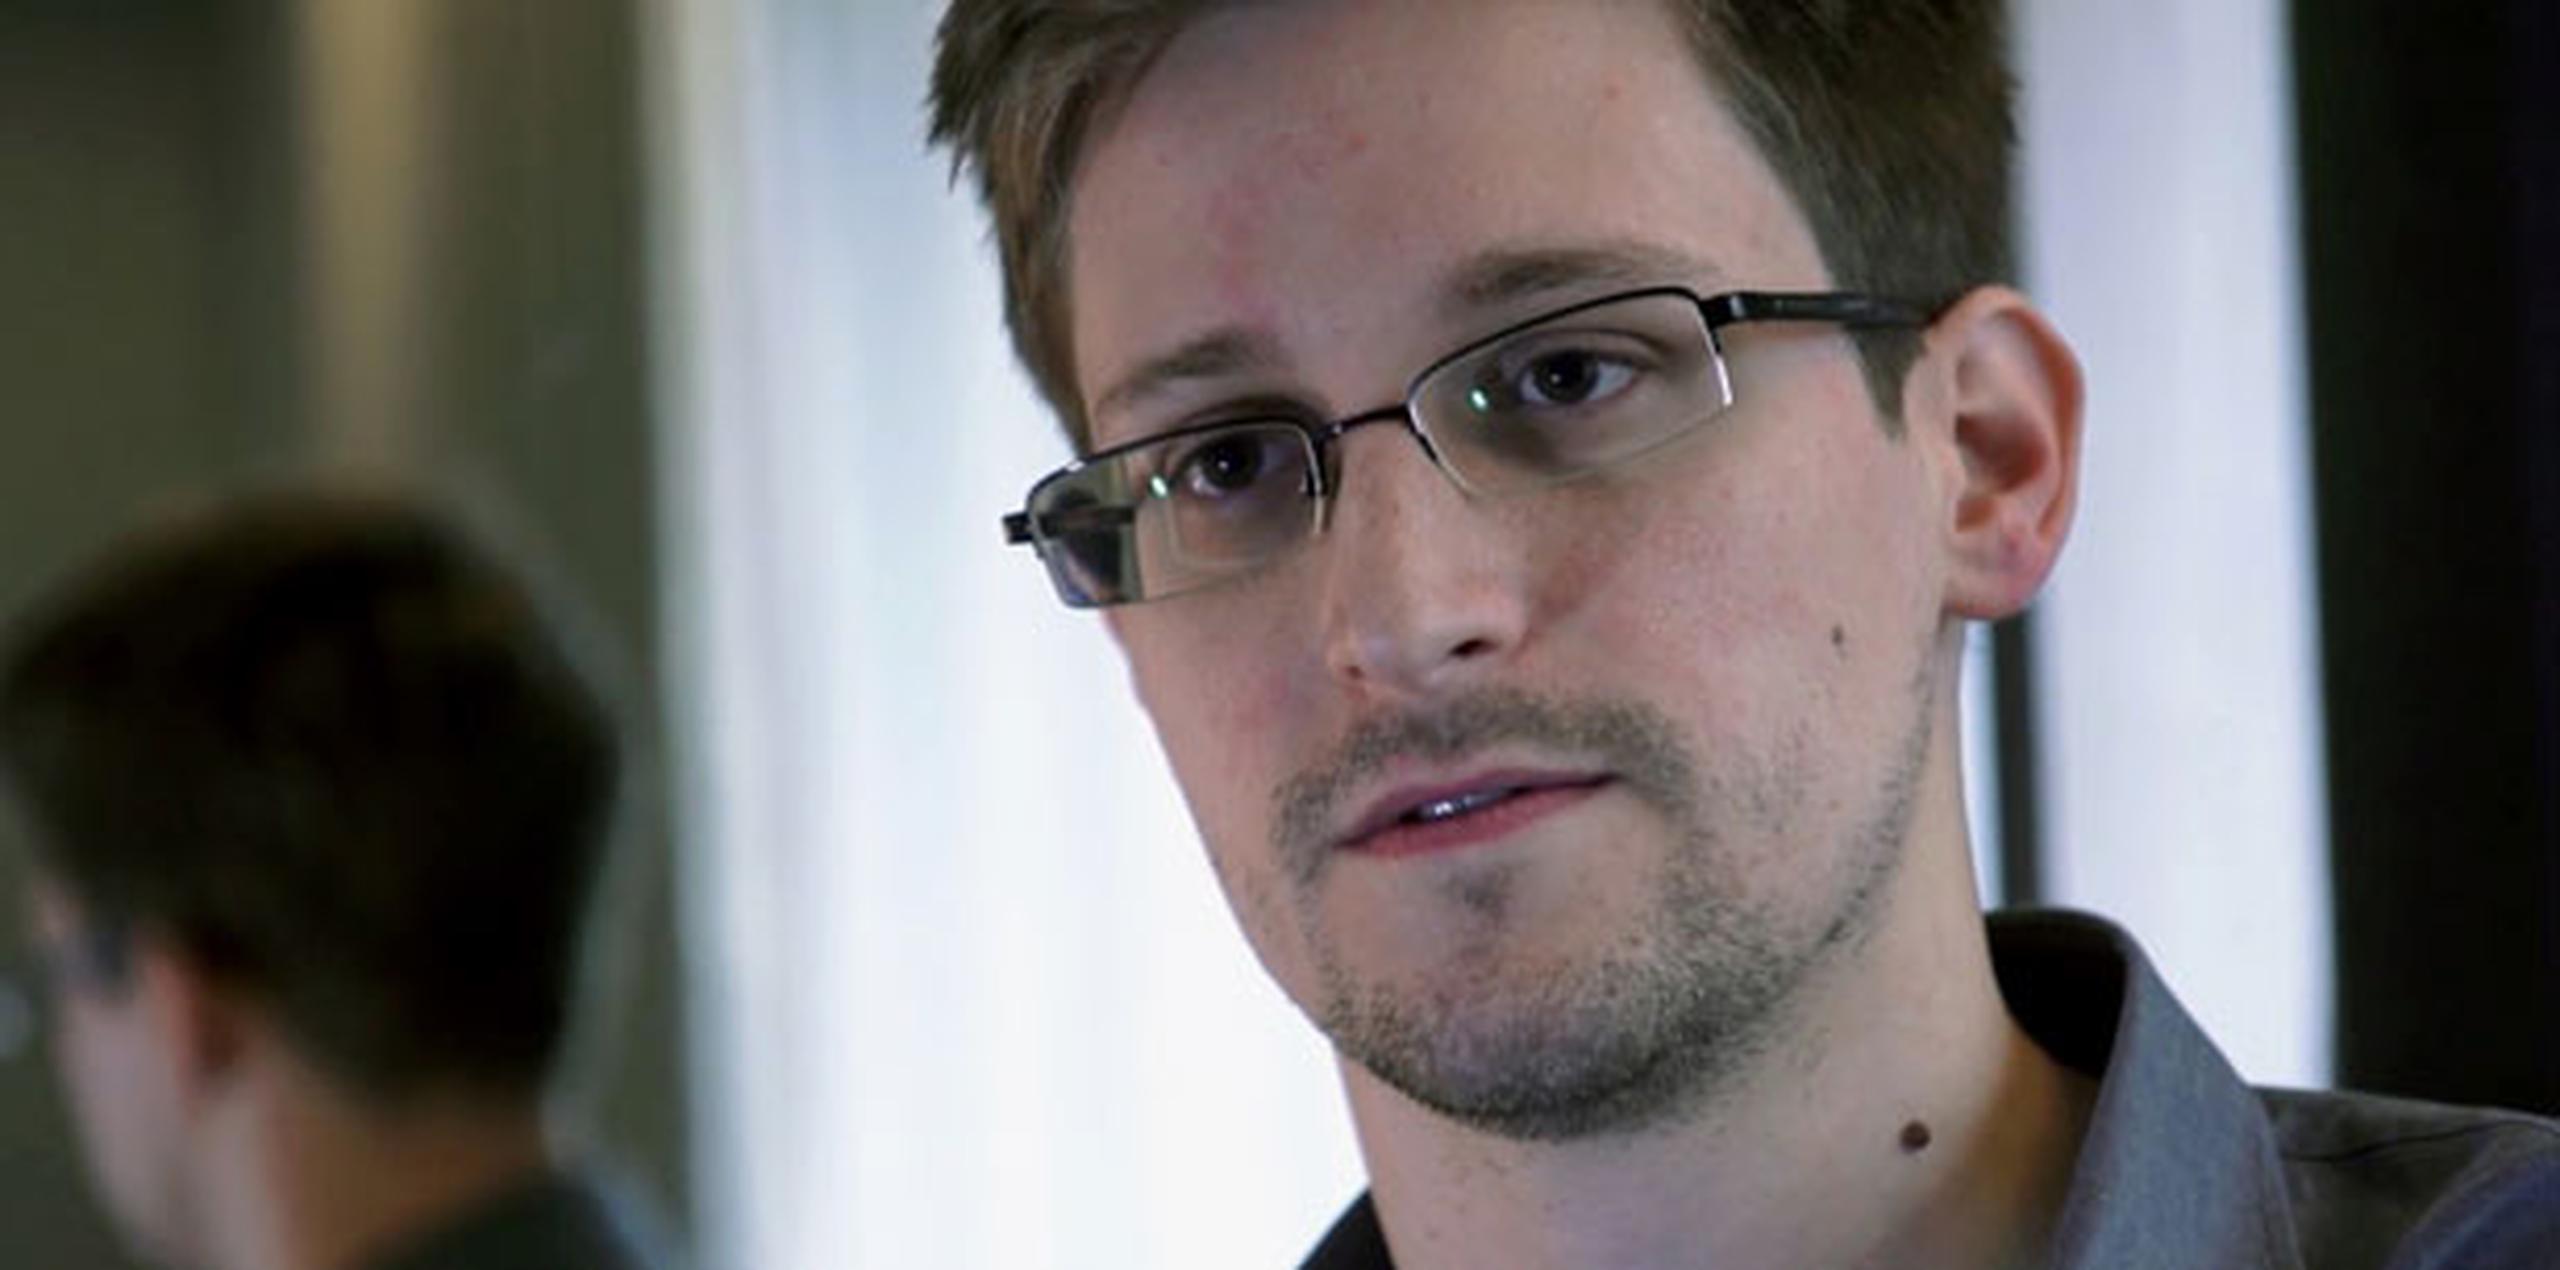 Ésta ha sido la primera vez desde la llegada de Snowden a Sheremétievo que las autoridades rusas admitían la posibilidad de que el reclamado por la Justicia estadounidense pudiese permanecer en Rusia. (Archivo)